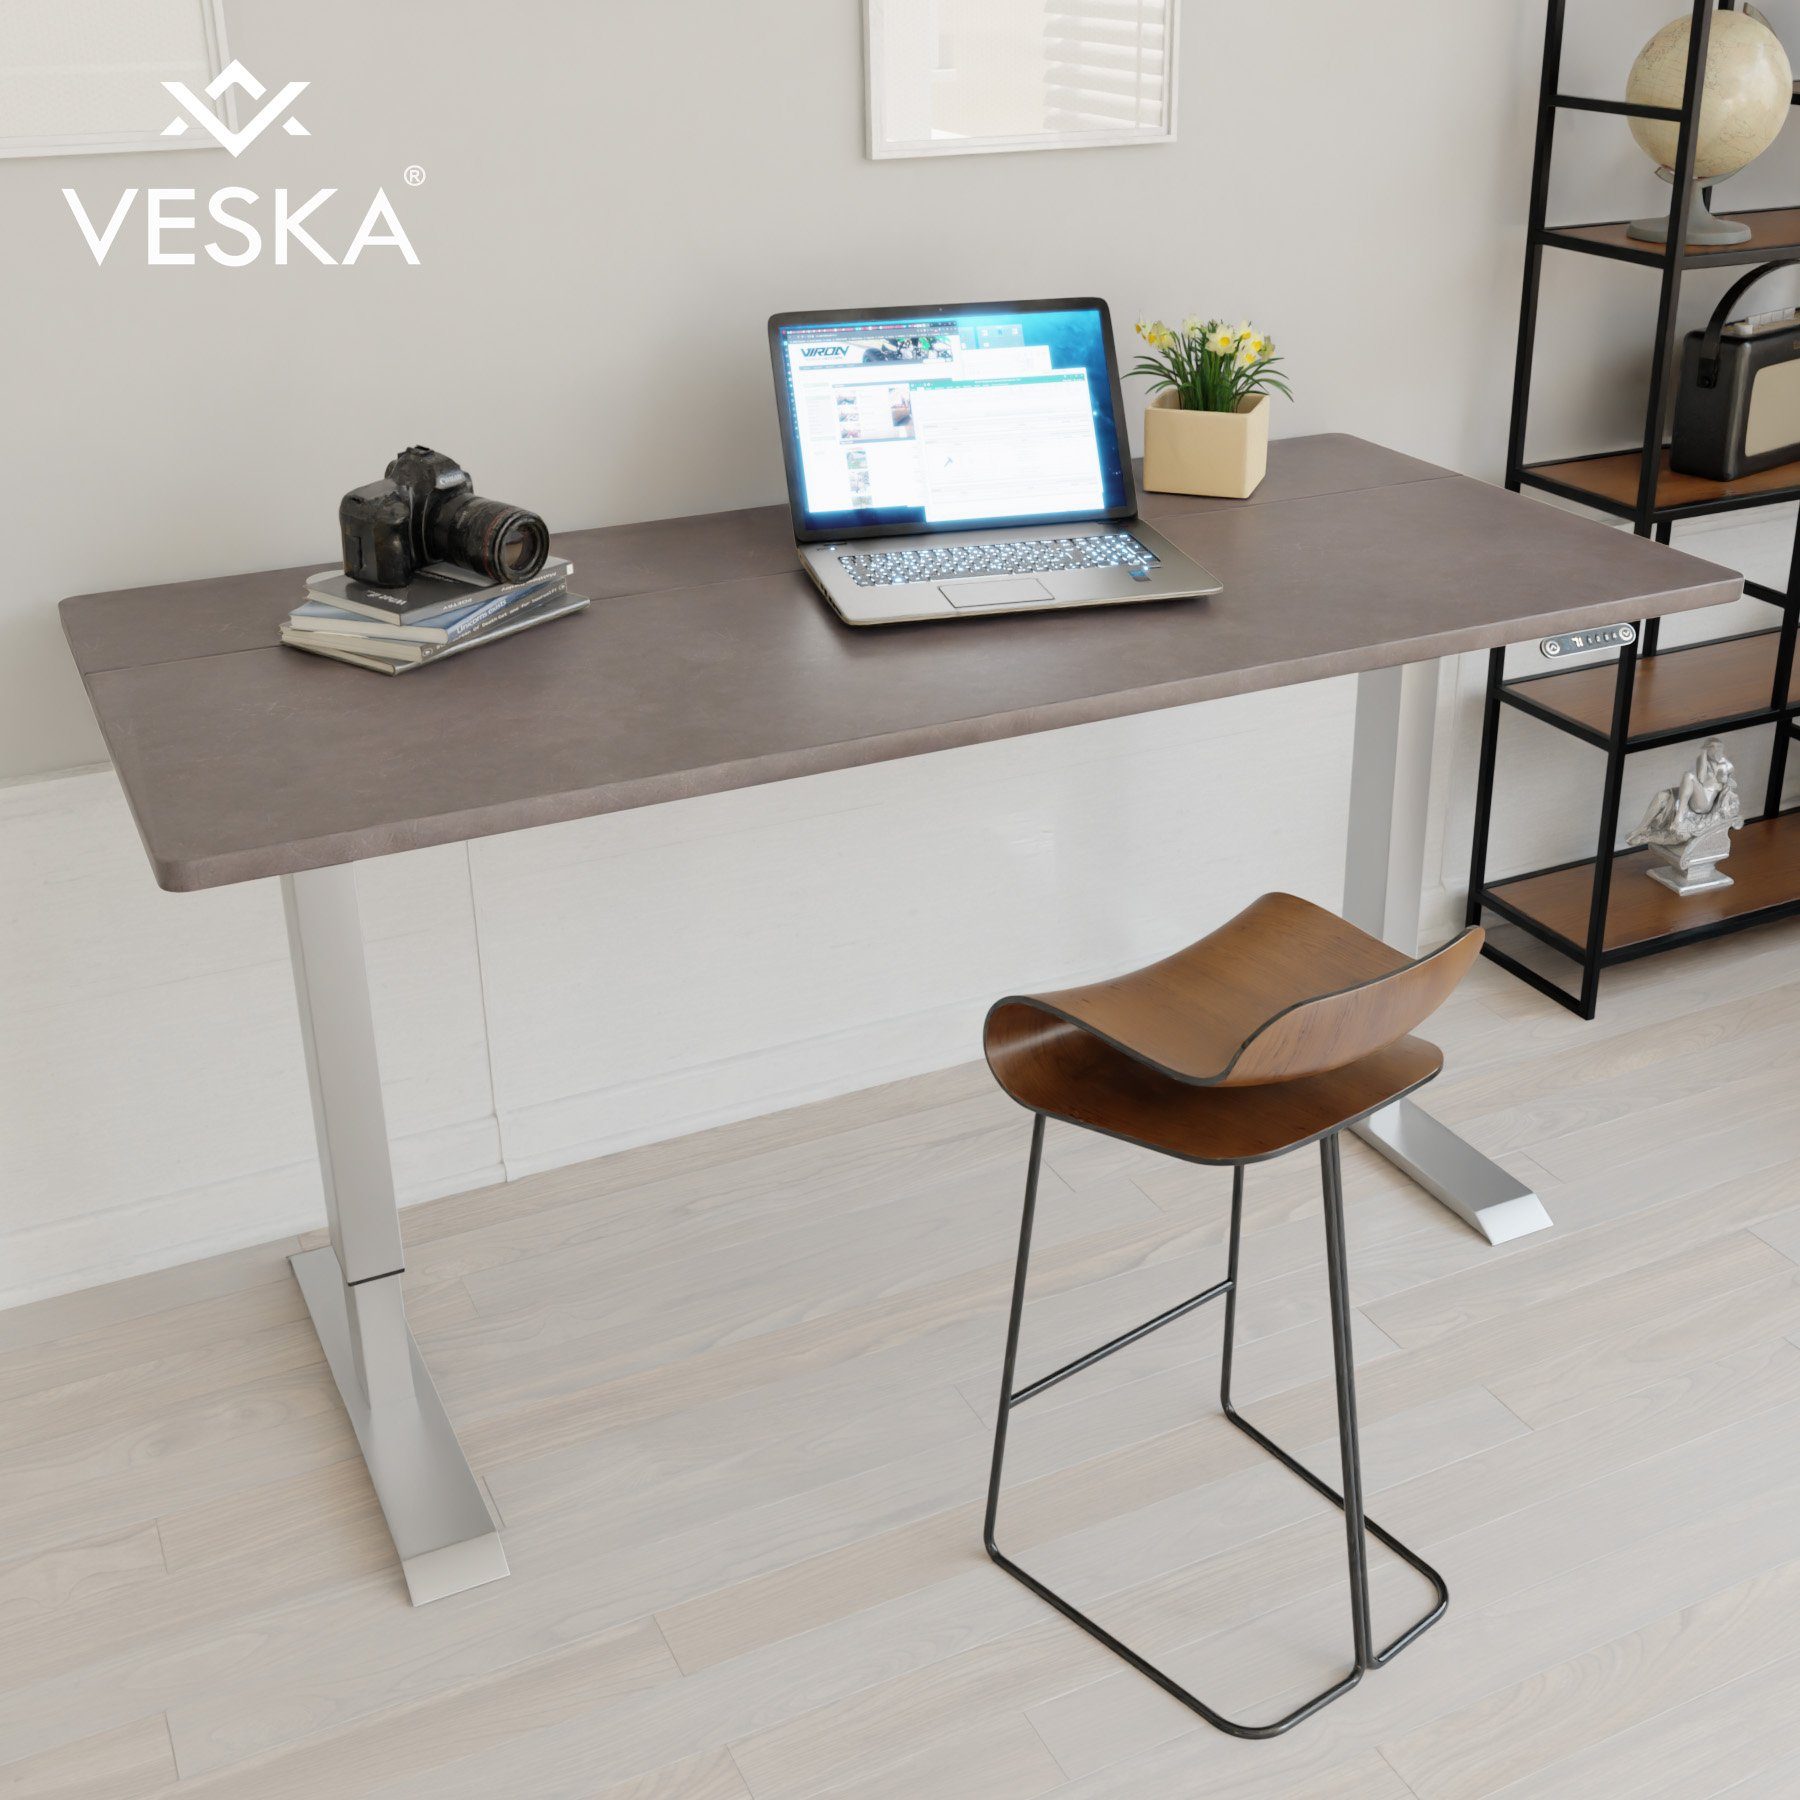 VESKA Schreibtisch Höhenverstellbar 140 x 70 cm - Bürotisch Elektrisch mit Touchscreen - Sitz- & Stehpult Home Office Silber | Stein-Anthrazit